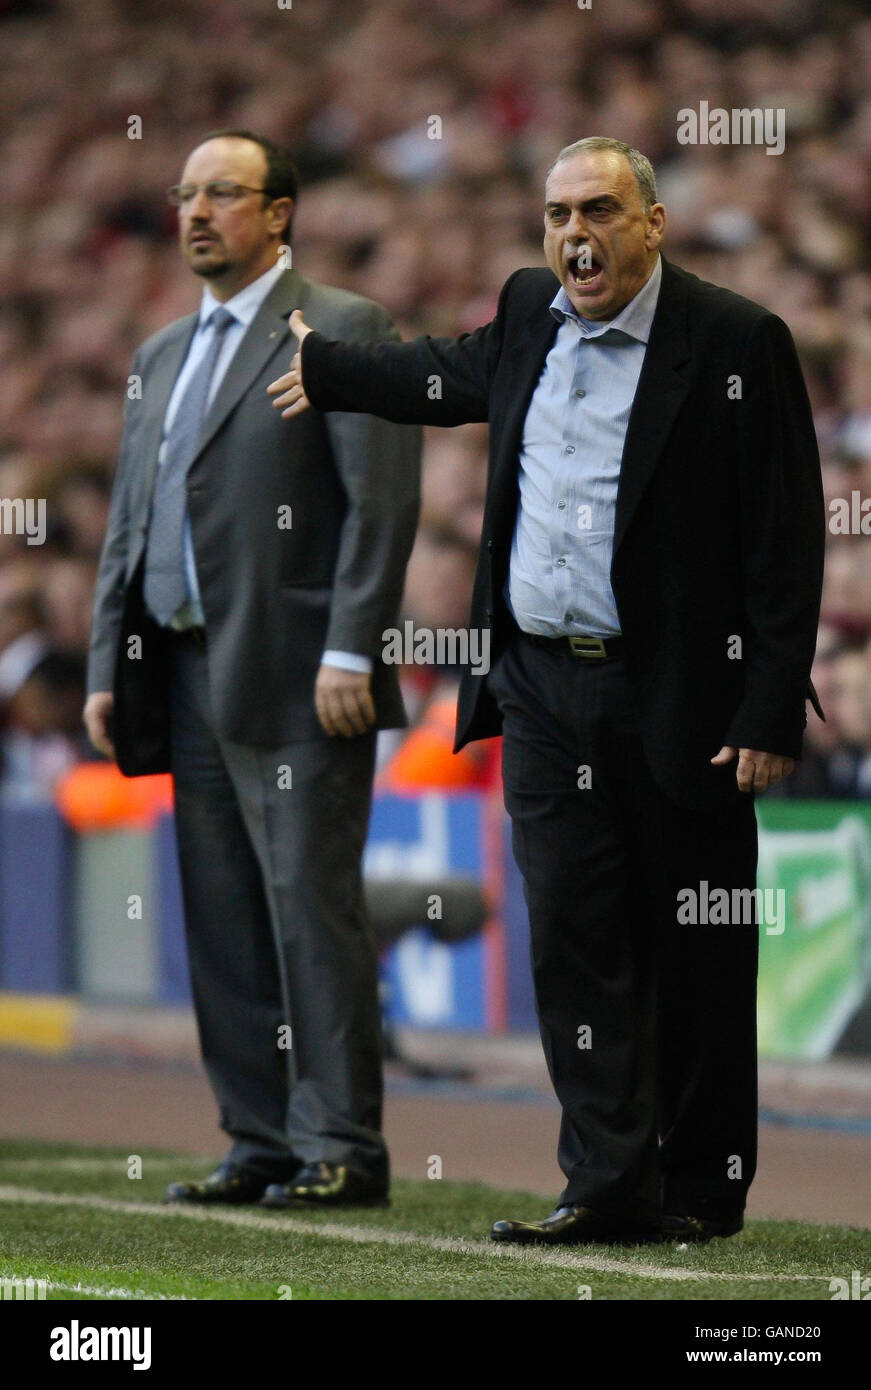 Rafael Benitez, directeur de Liverpool, et Avram Grant, directeur de Chelsea, lors du match de demi-finale de la première jambe de l'UEFA Champions League à Anfield, Liverpool. Banque D'Images